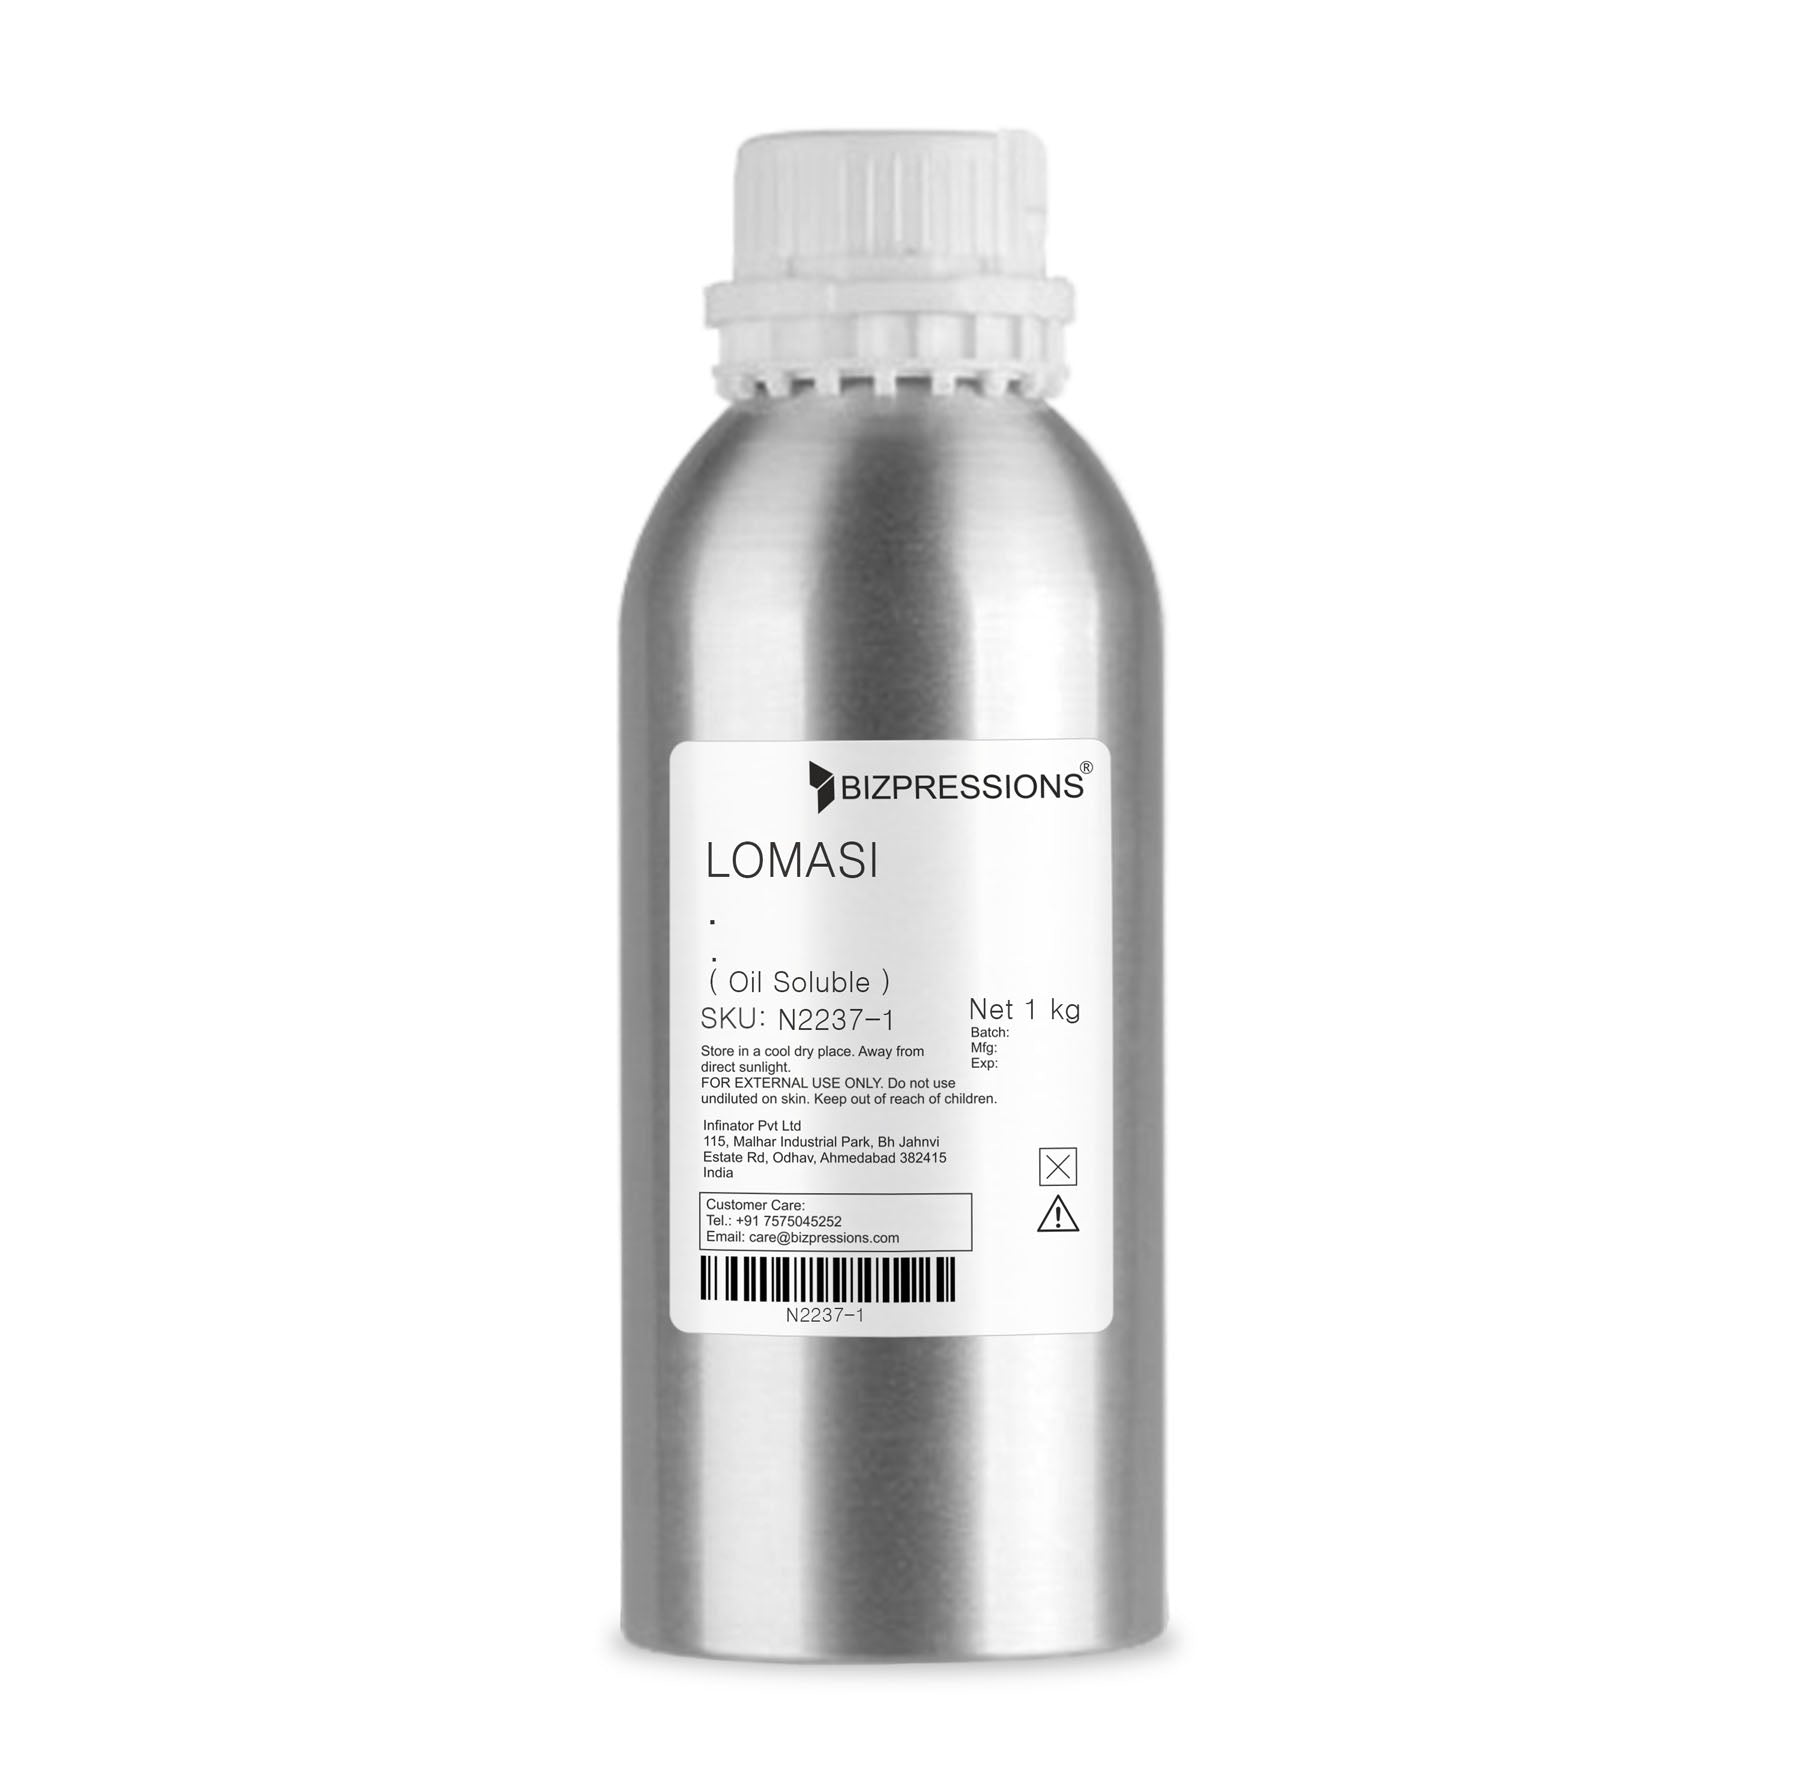 LOMASI - Fragrance ( Oil Soluble ) - 1 kg